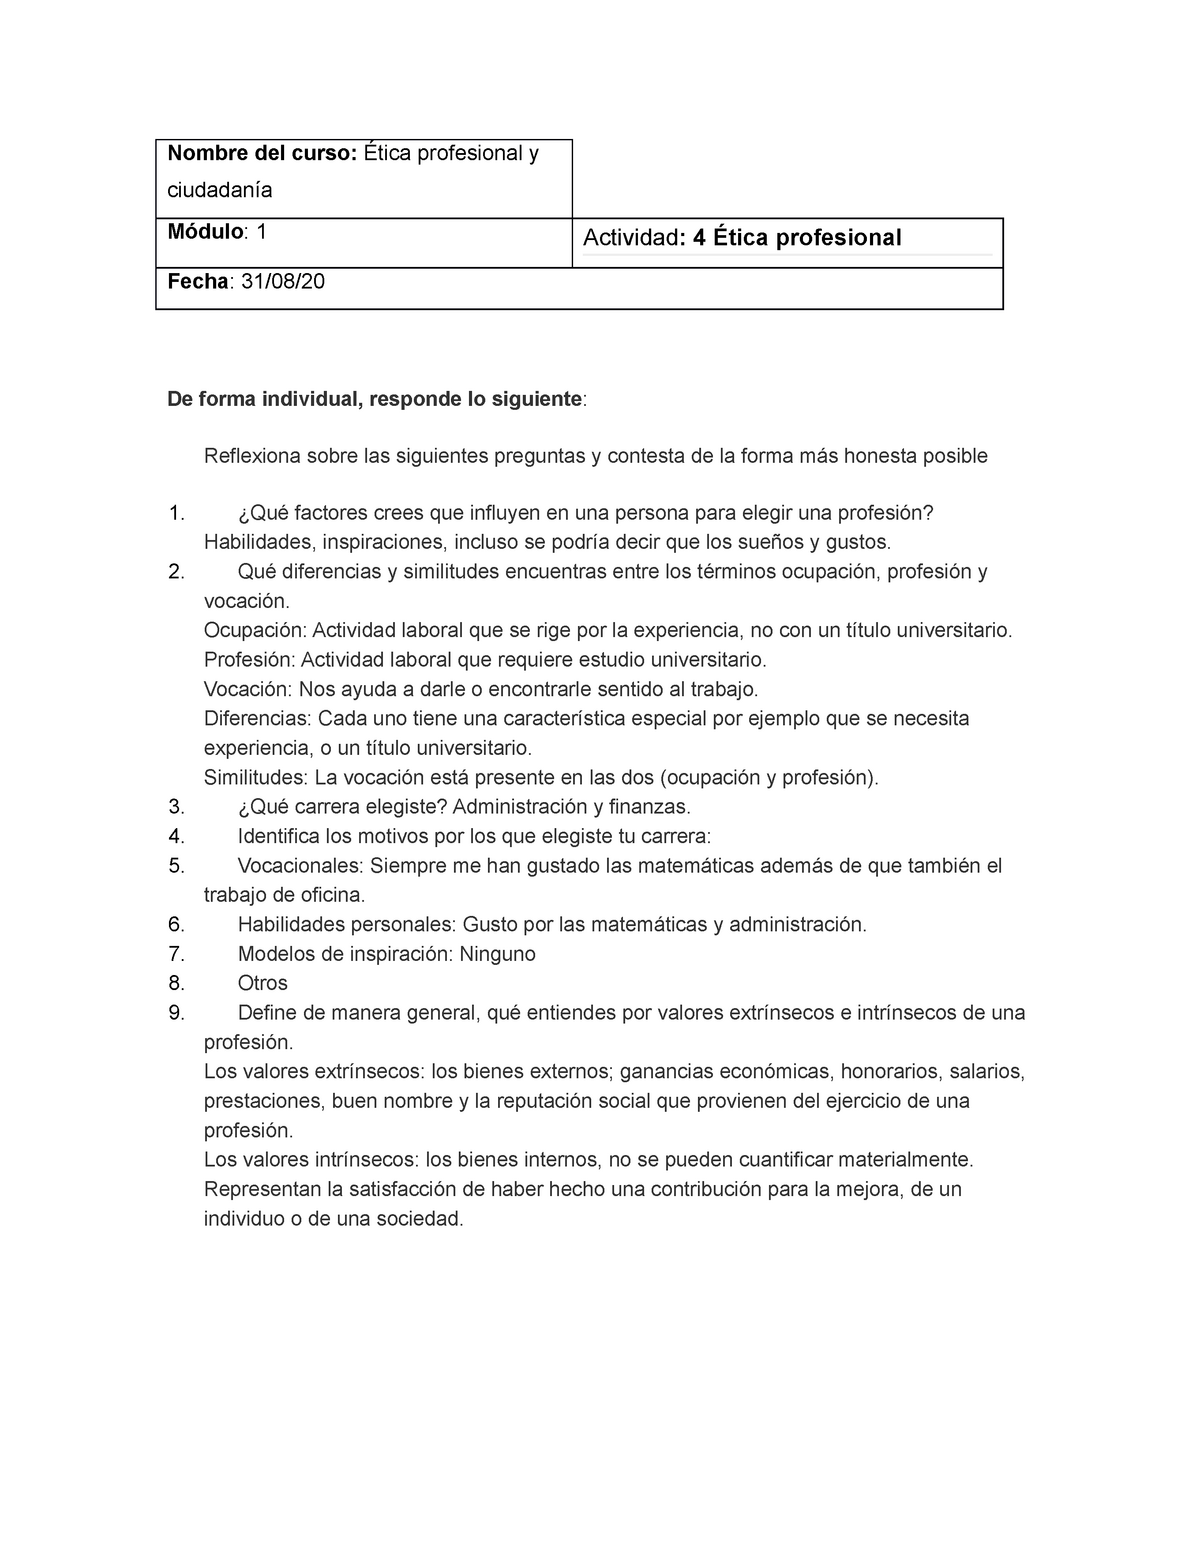 Act 4 Etica Etica Profesional Nombre Del Curso Ética Profesional Y Ciudadanía Módulo 1 0020